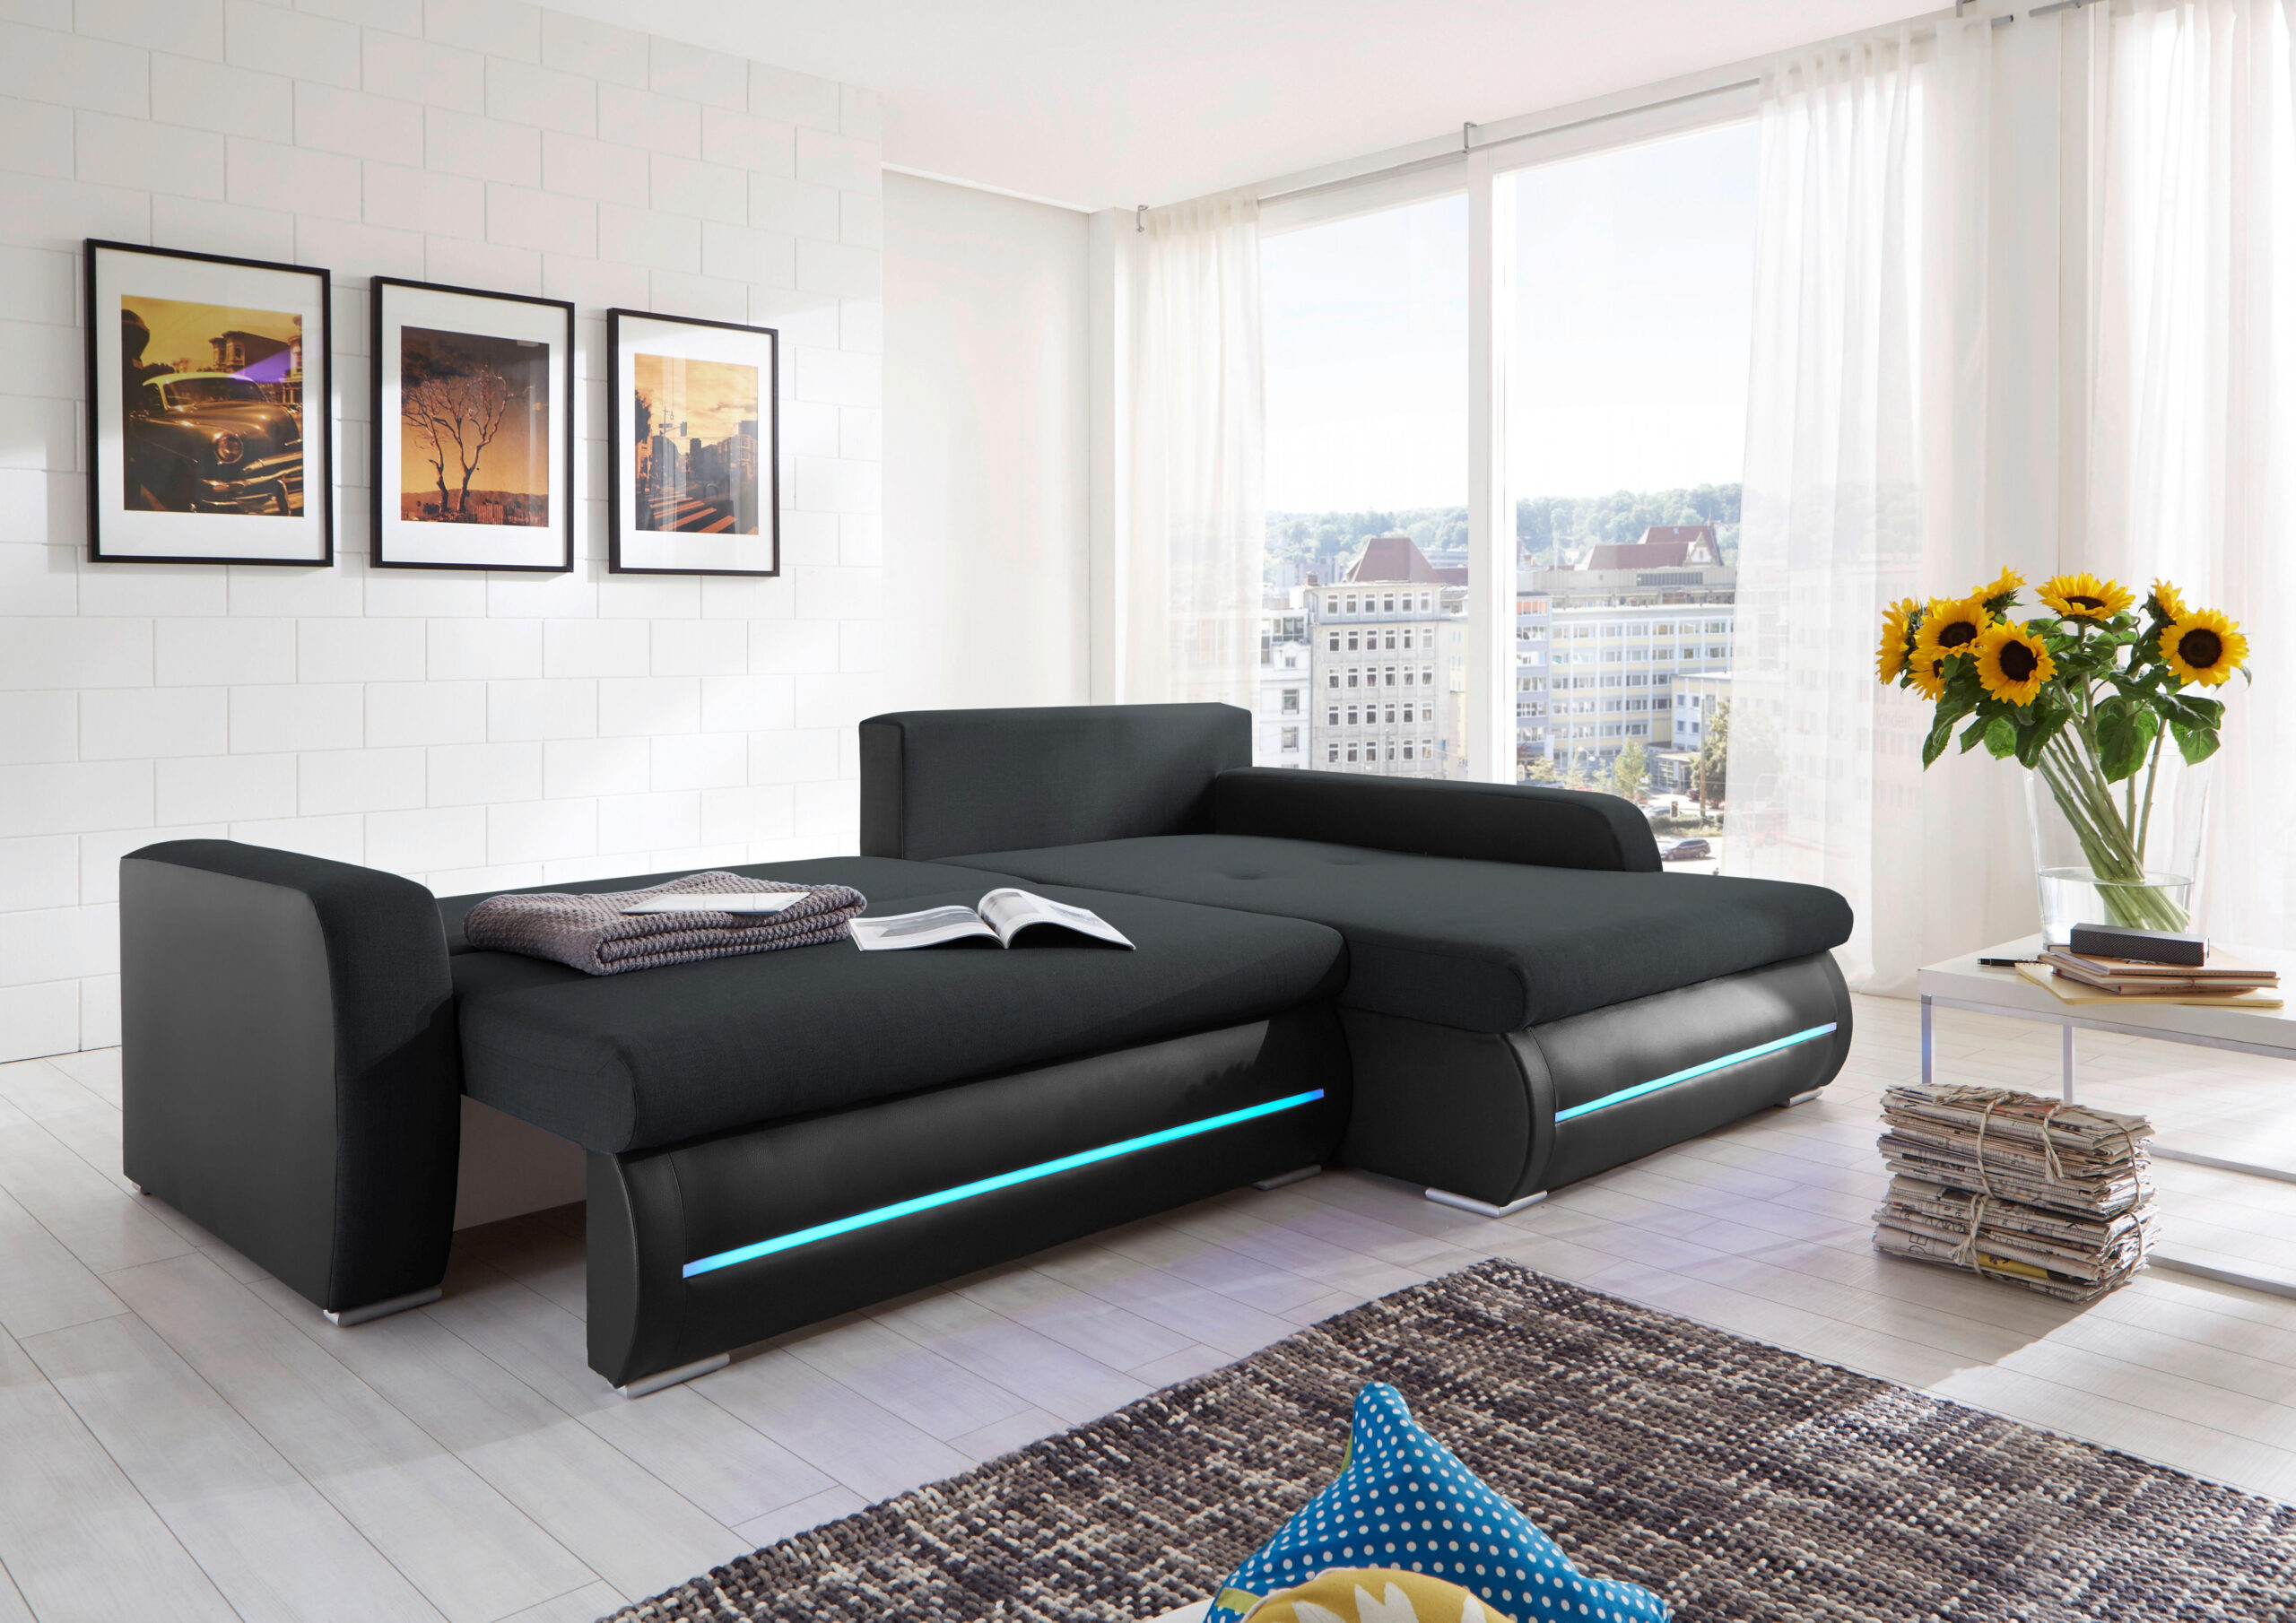 Wohnzimmer  Möbel zu entspannten Preisen  POCO Wohnwelt